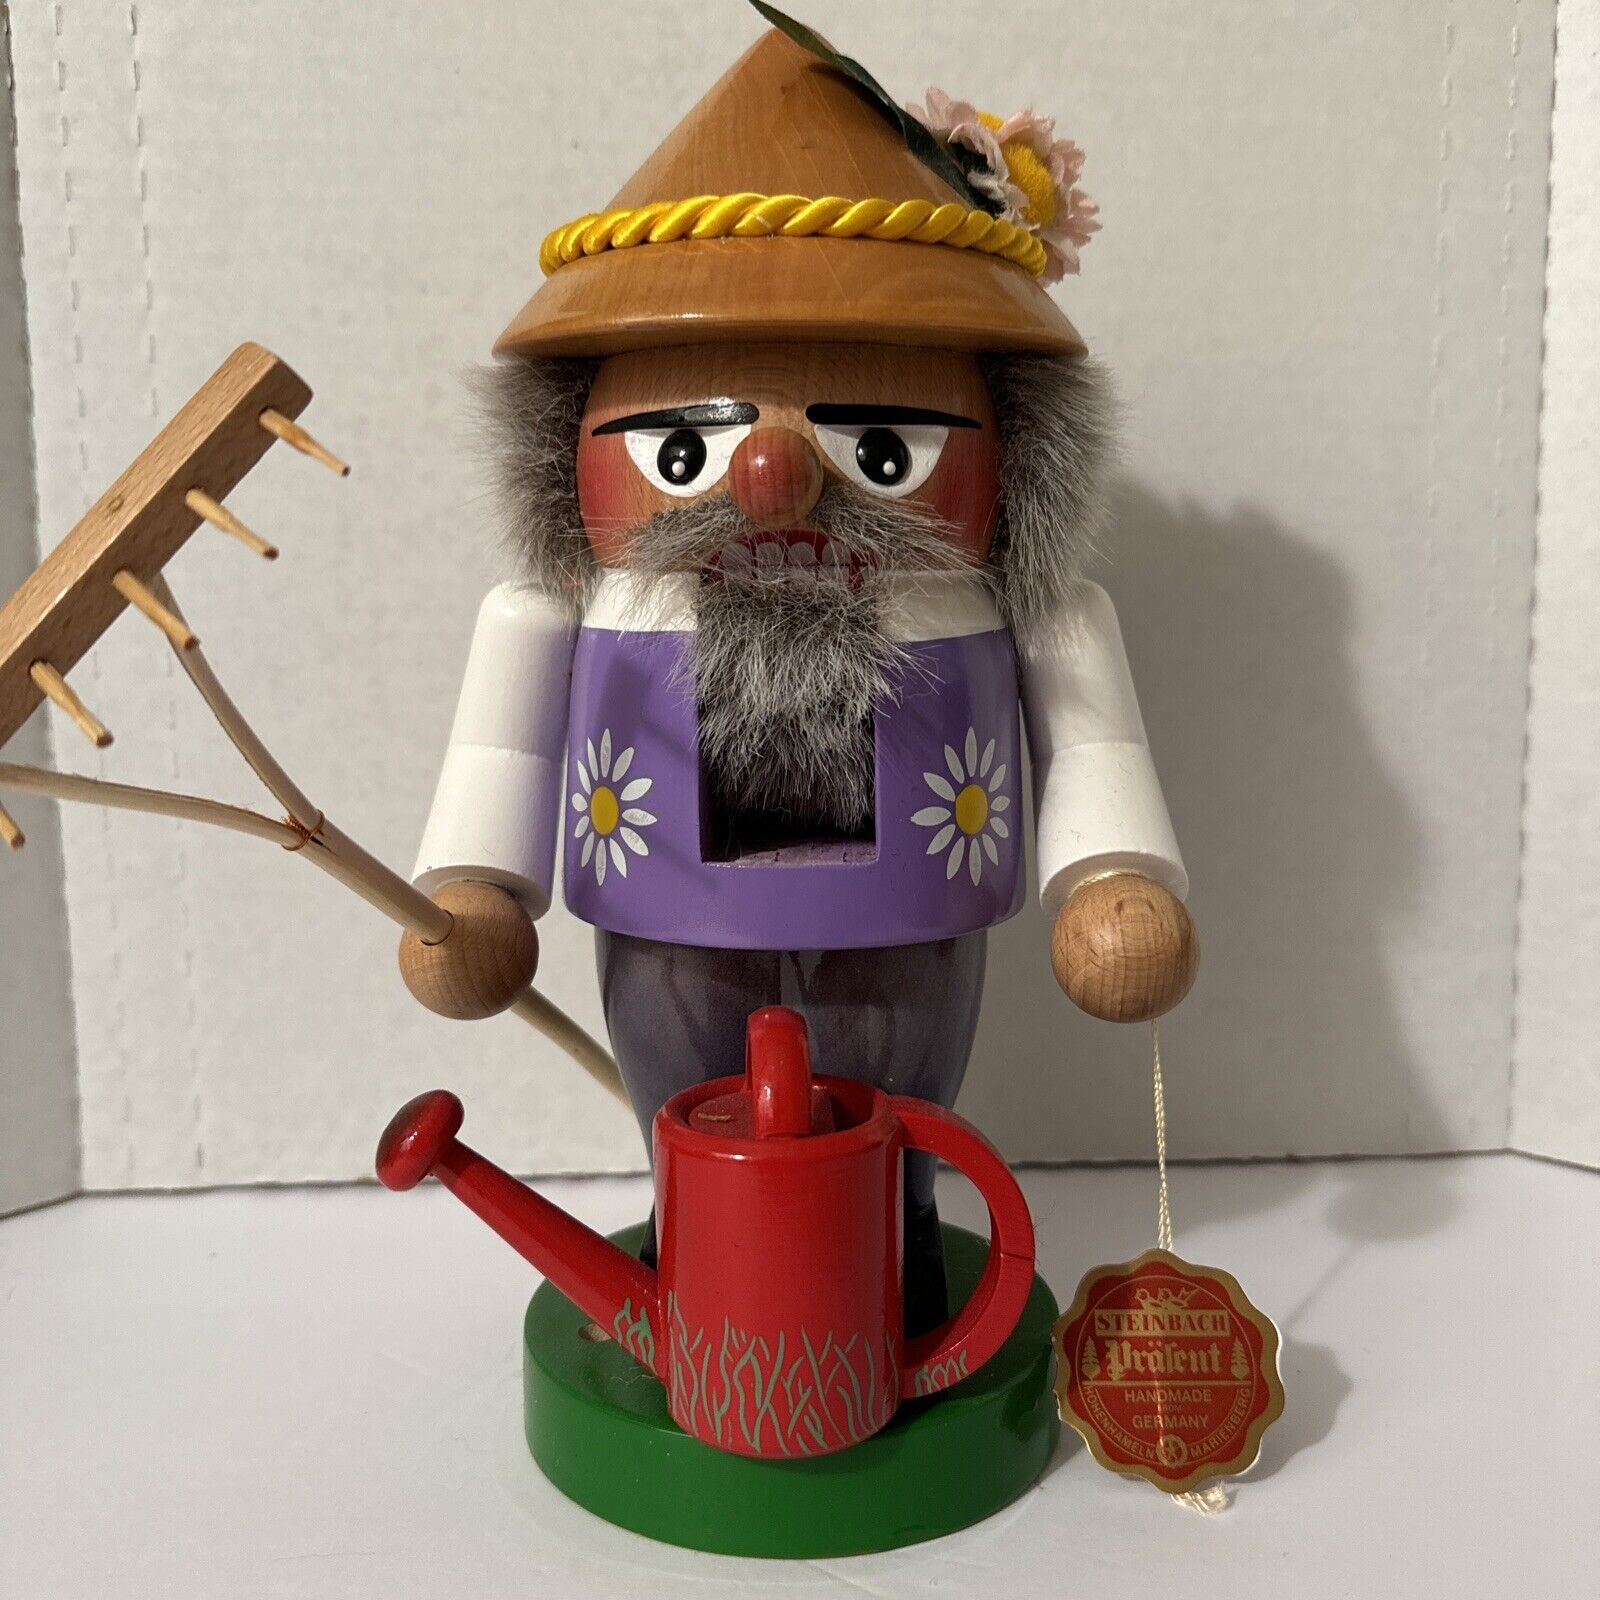 Steinbach “Gardener Gnome